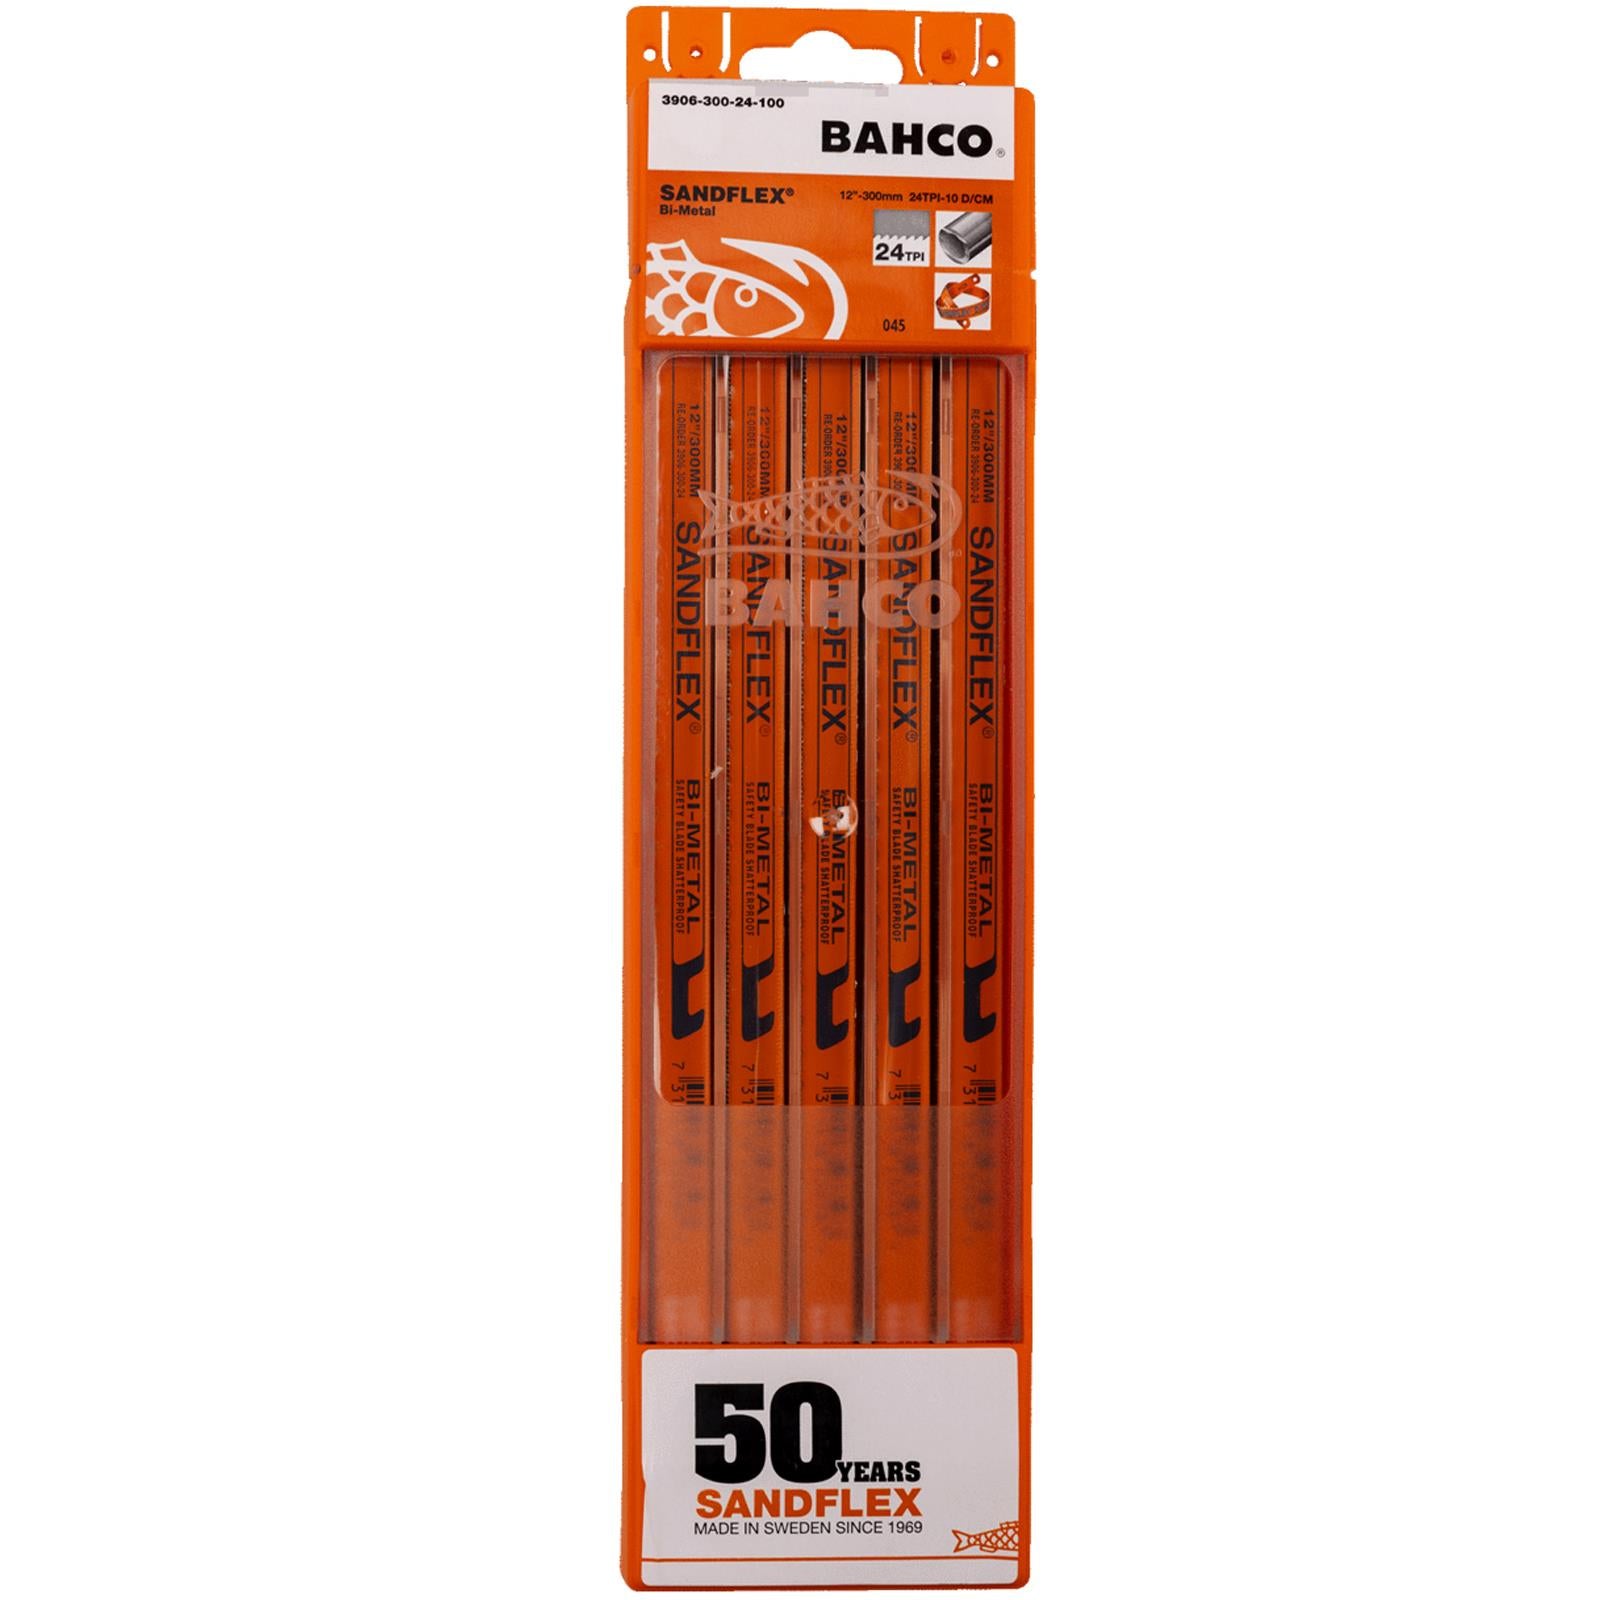 Bahco Sandflex 300mm Hacksaw Blades